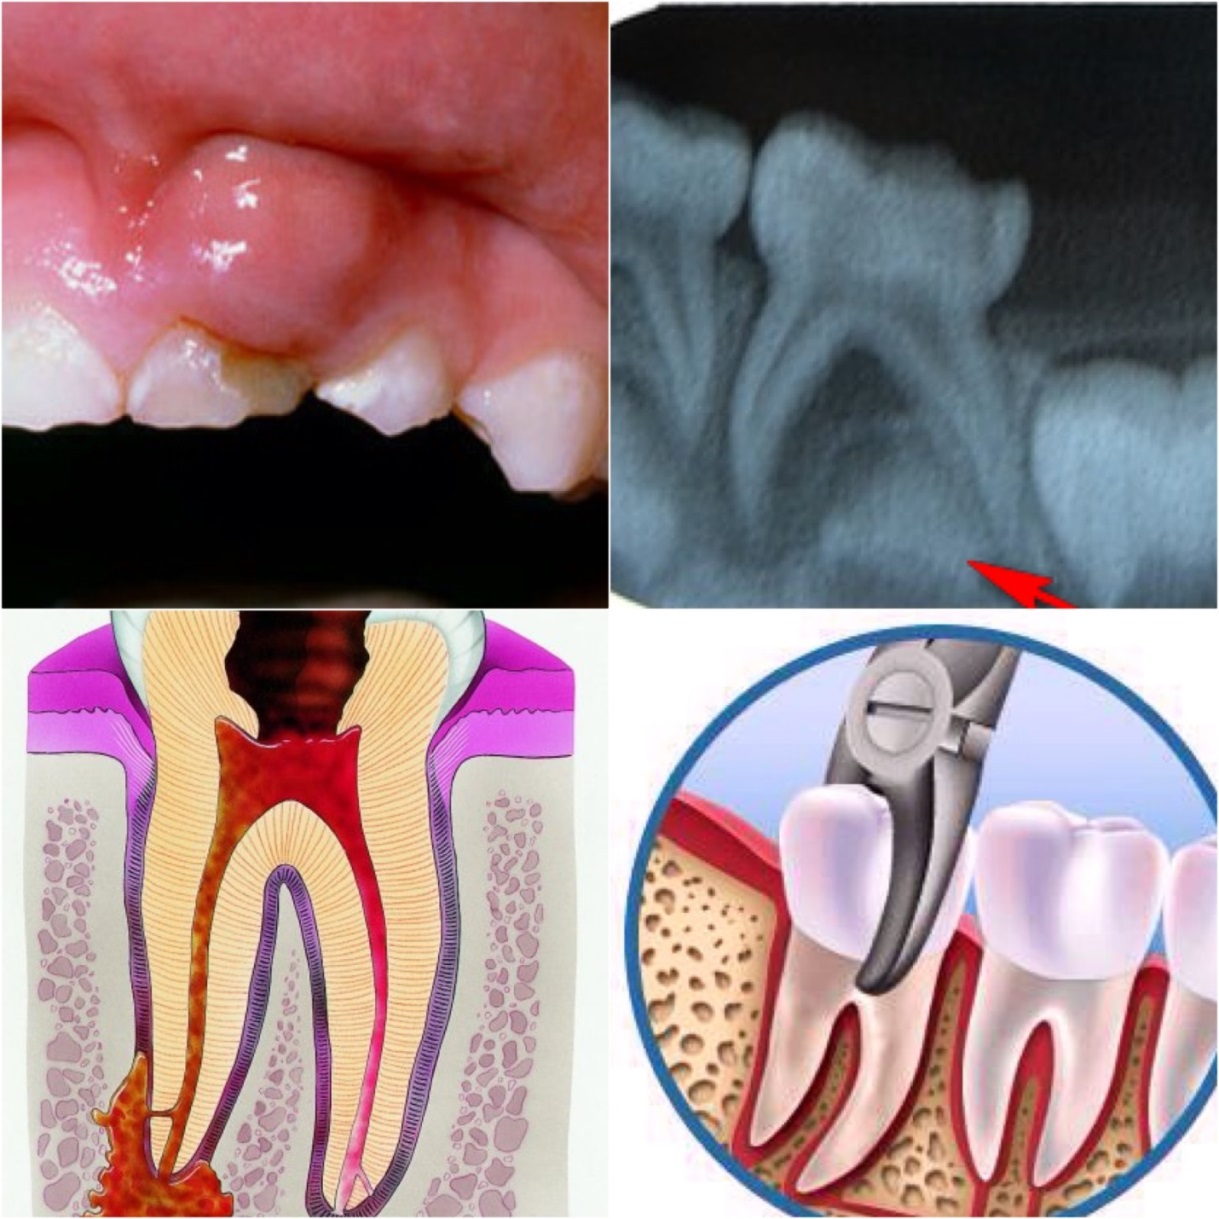 Лечение пульпита и периодонтита молочных зубов